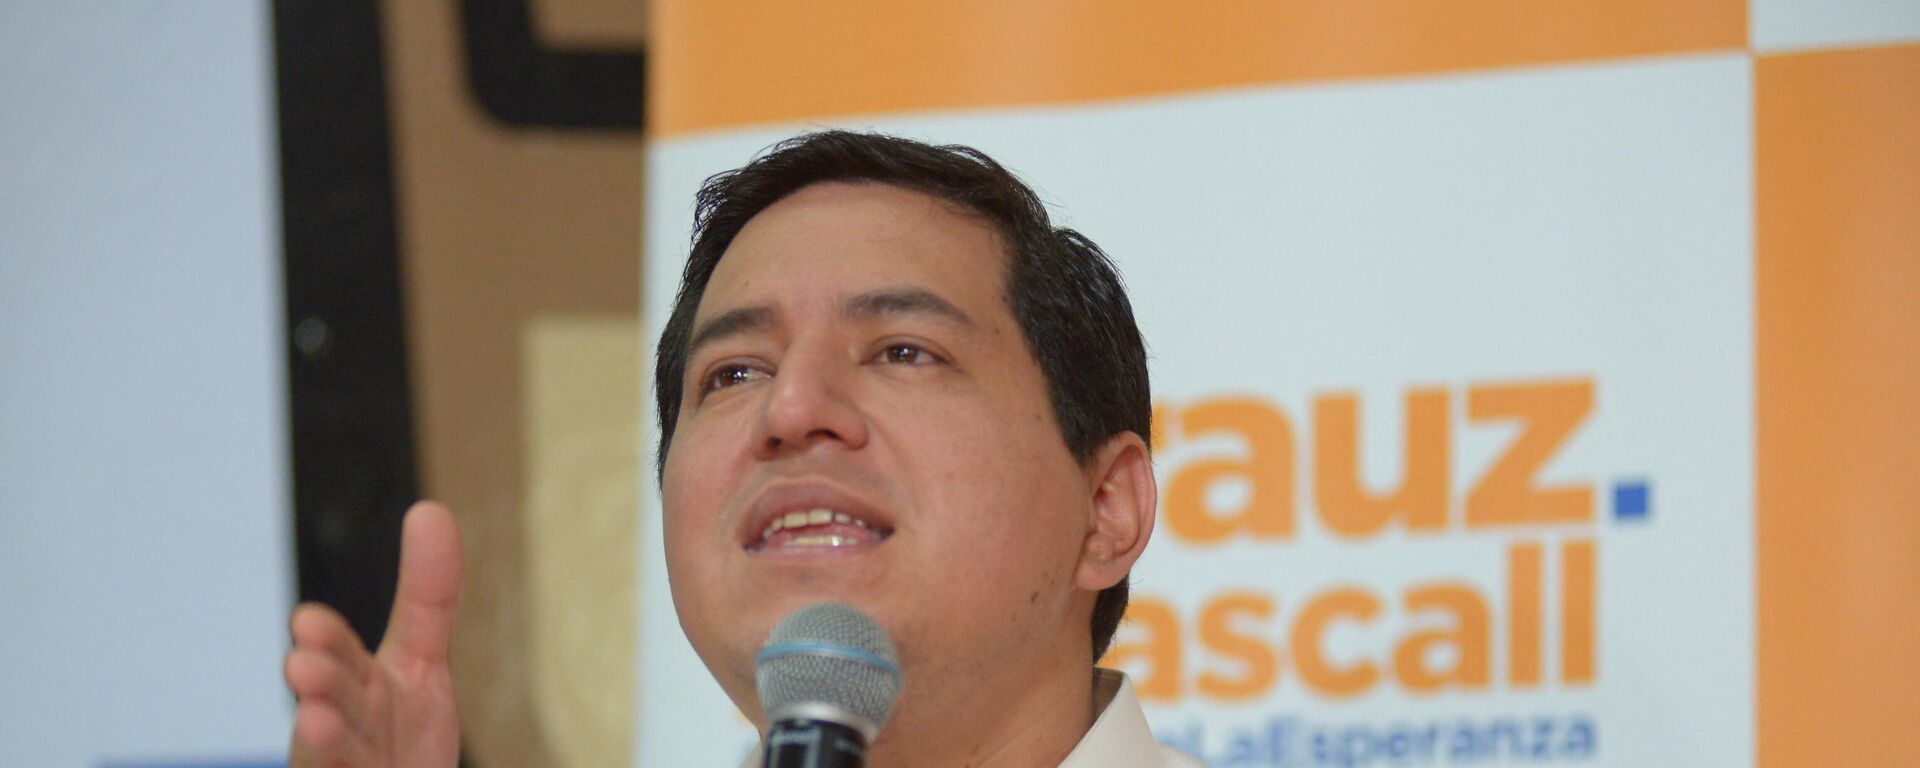 Andrés Arauz, candidato a la presidencia de Ecuador - Sputnik Mundo, 1920, 21.02.2021